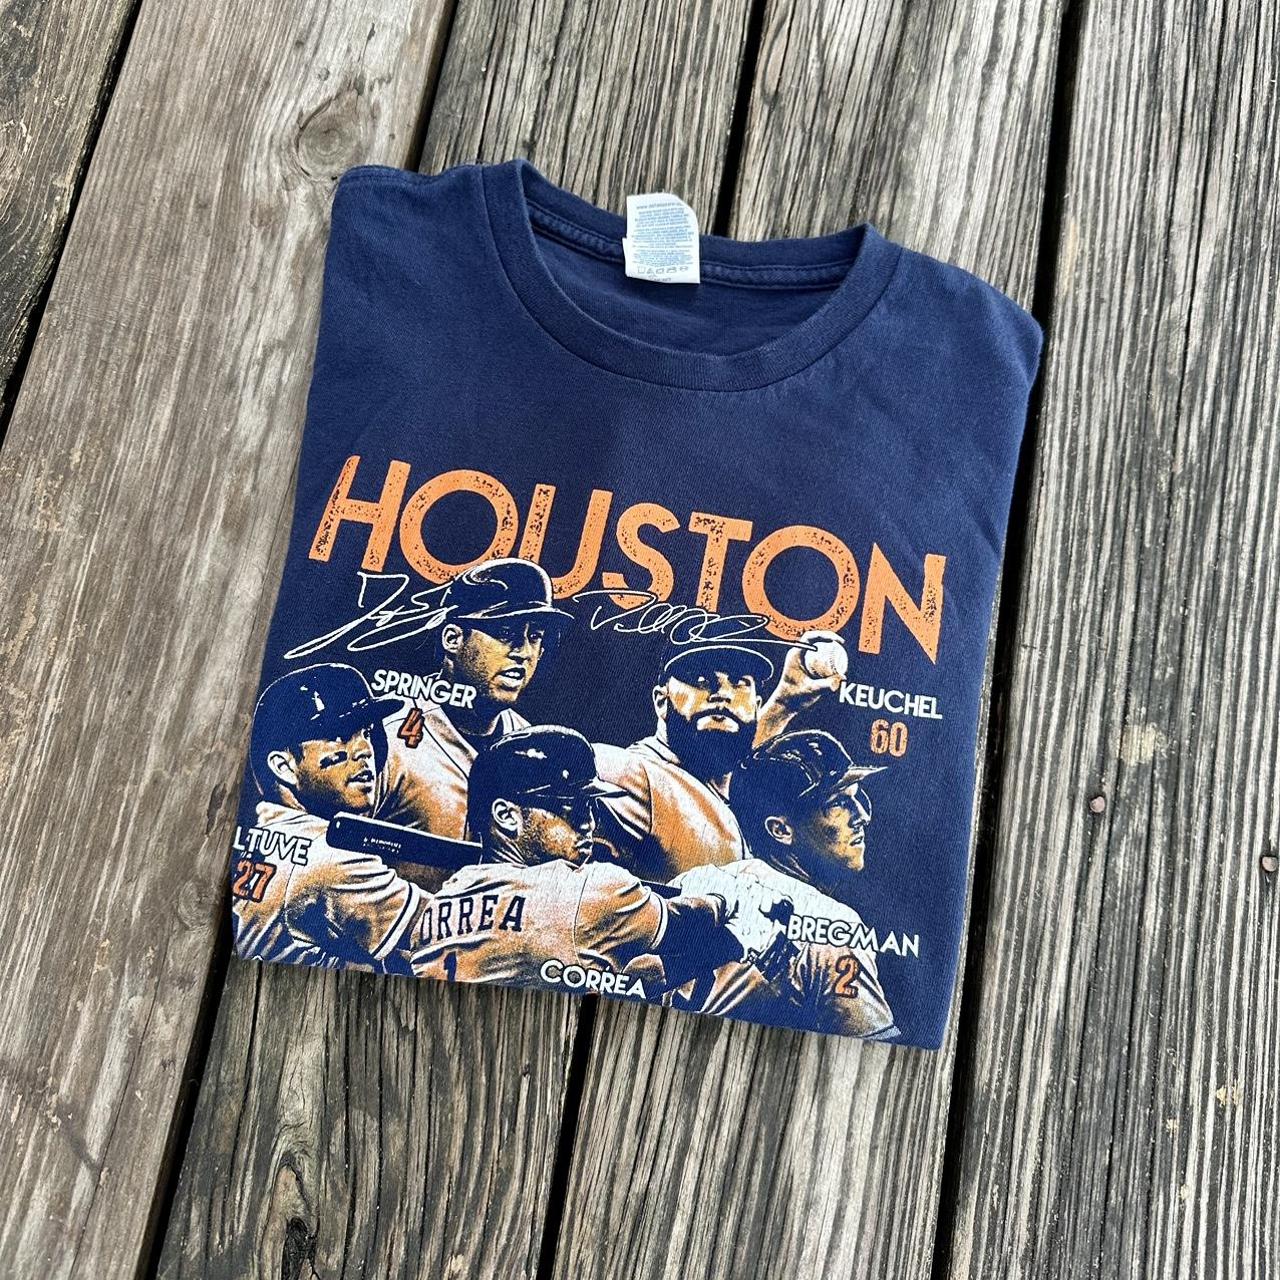 Astro dome Houston Astros tee - Depop